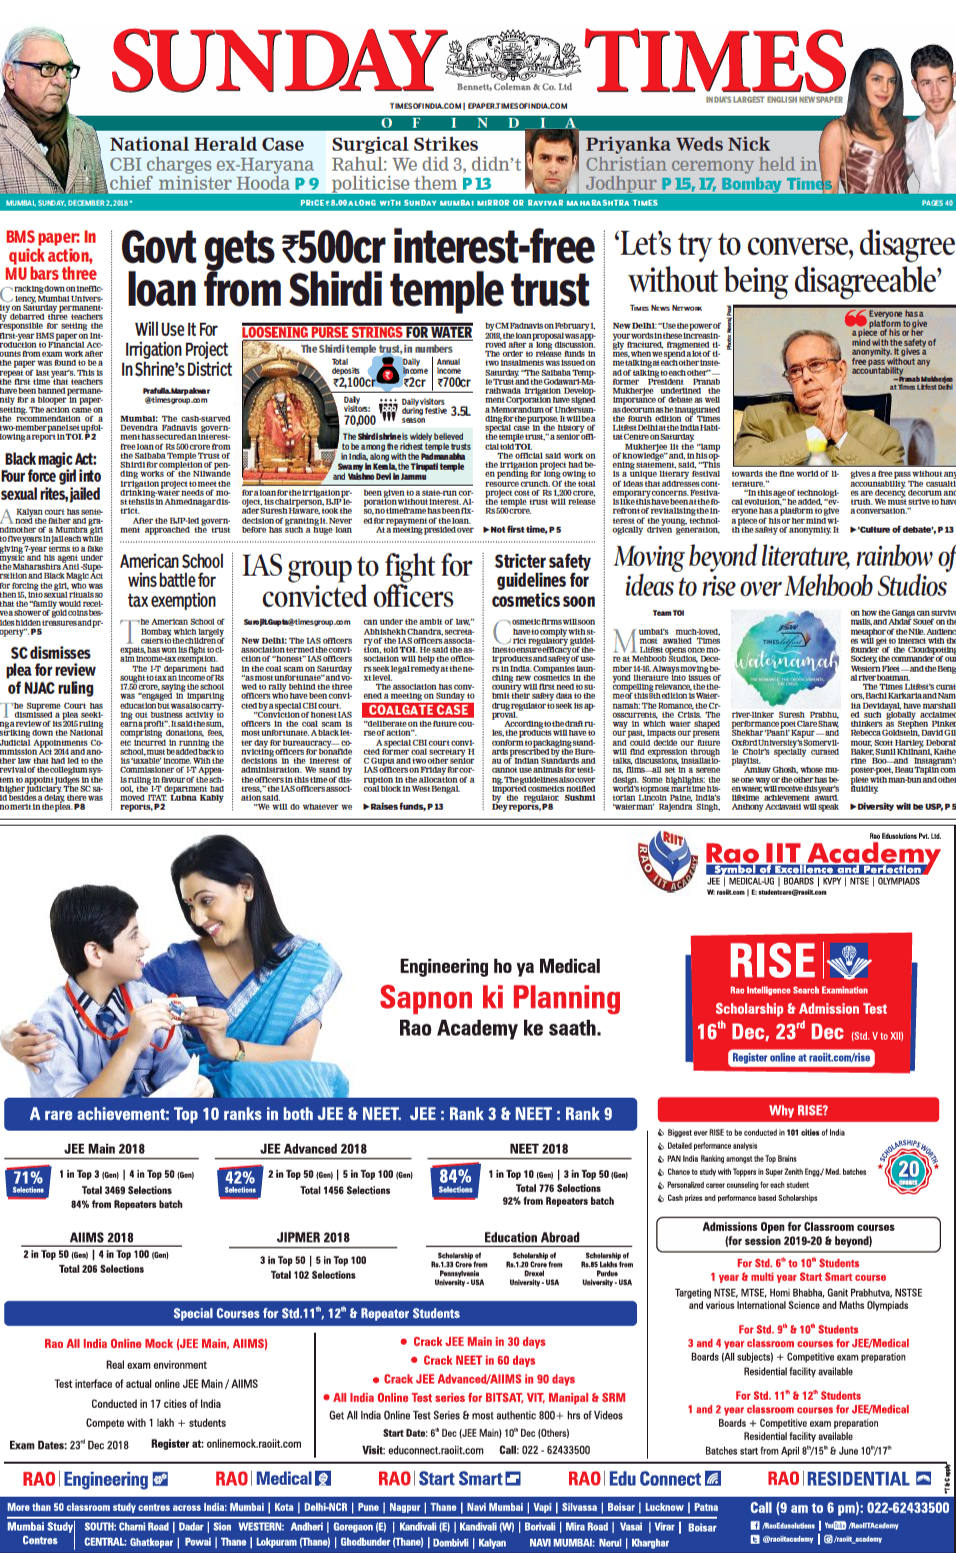 Advertisement of Rao IIT Academy in Maharashtra Times